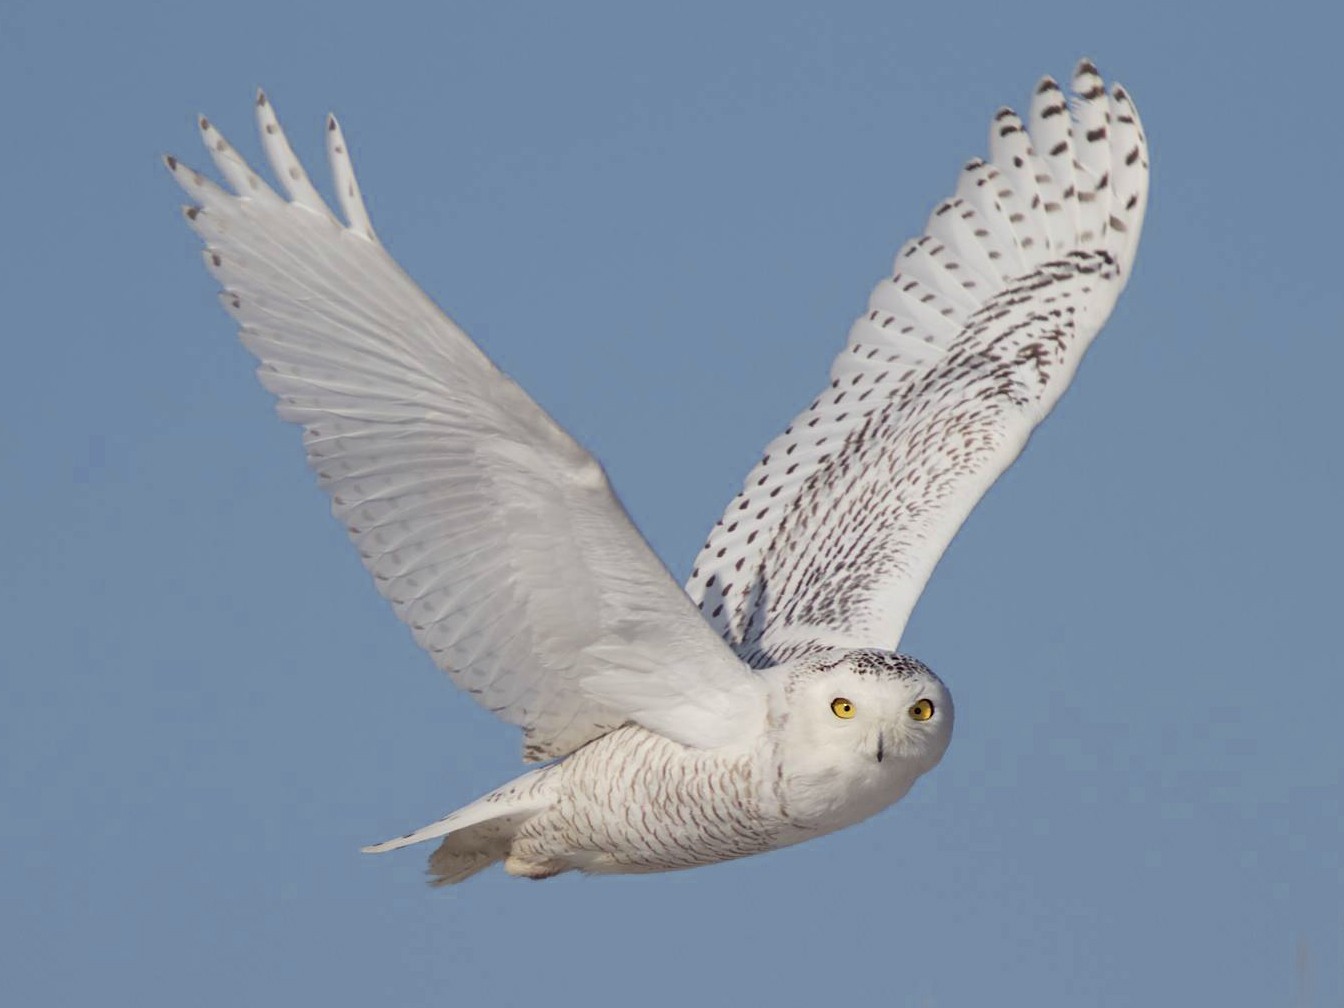 superb owl - superbowl- memes- superbowl 55- google image for bird